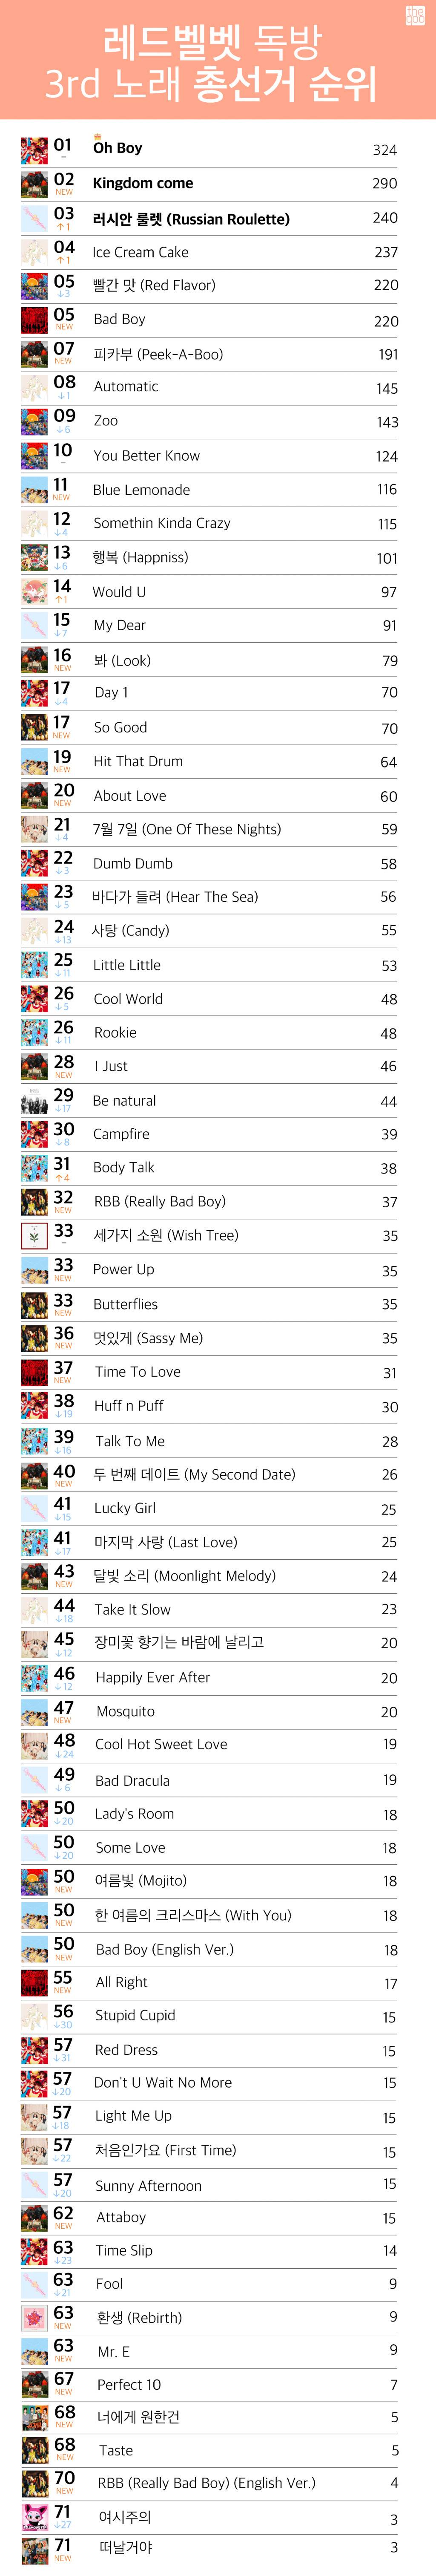 아이돌 커뮤니티에서 투표한 레드벨벳 노래 TOP3 | 인스티즈